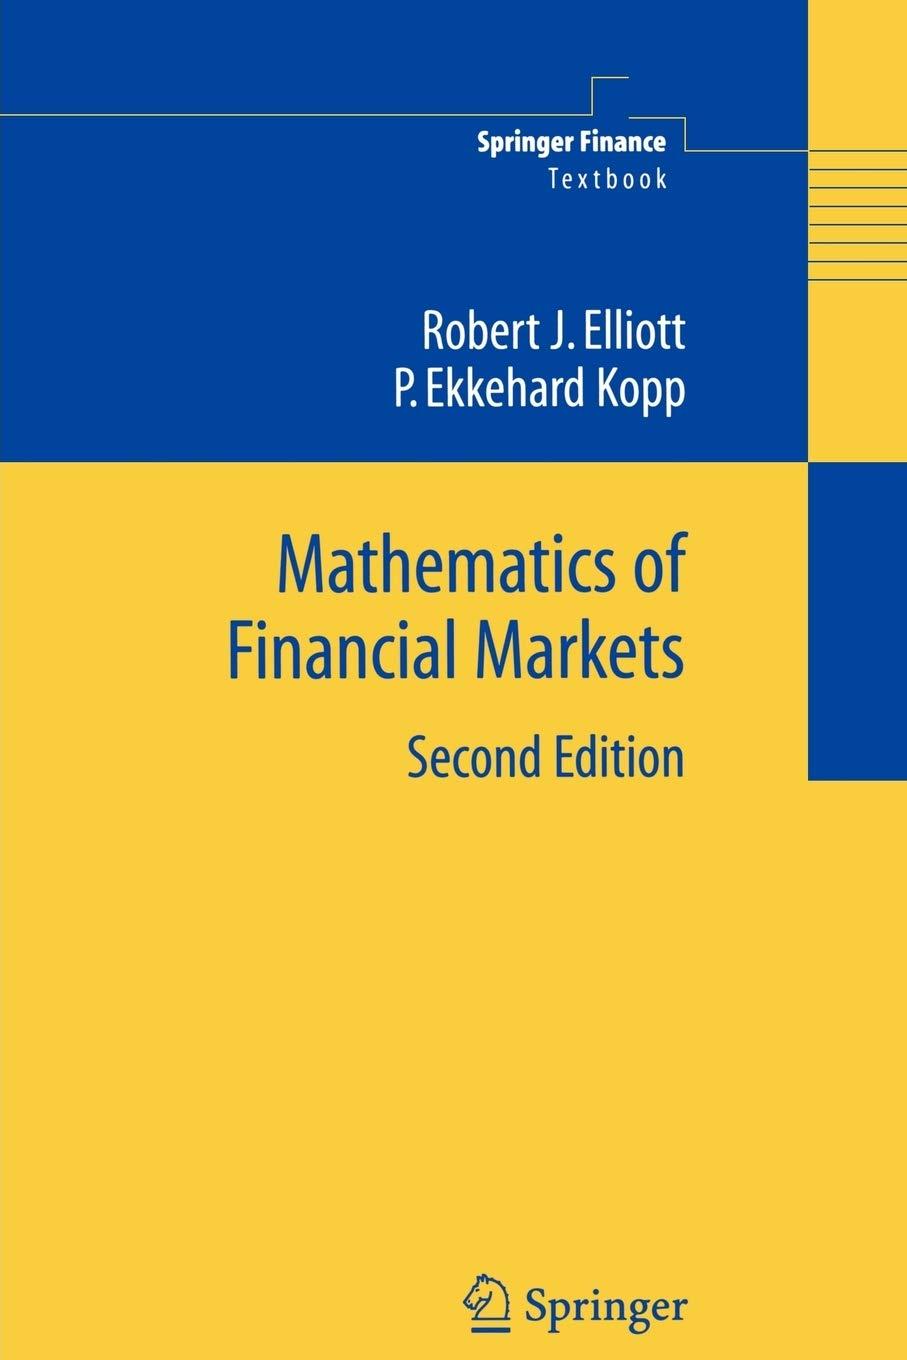 mathematics of financial markets 2nd edition robert j elliott, p. ekkehard kopp 1441919422, 978-1441919427